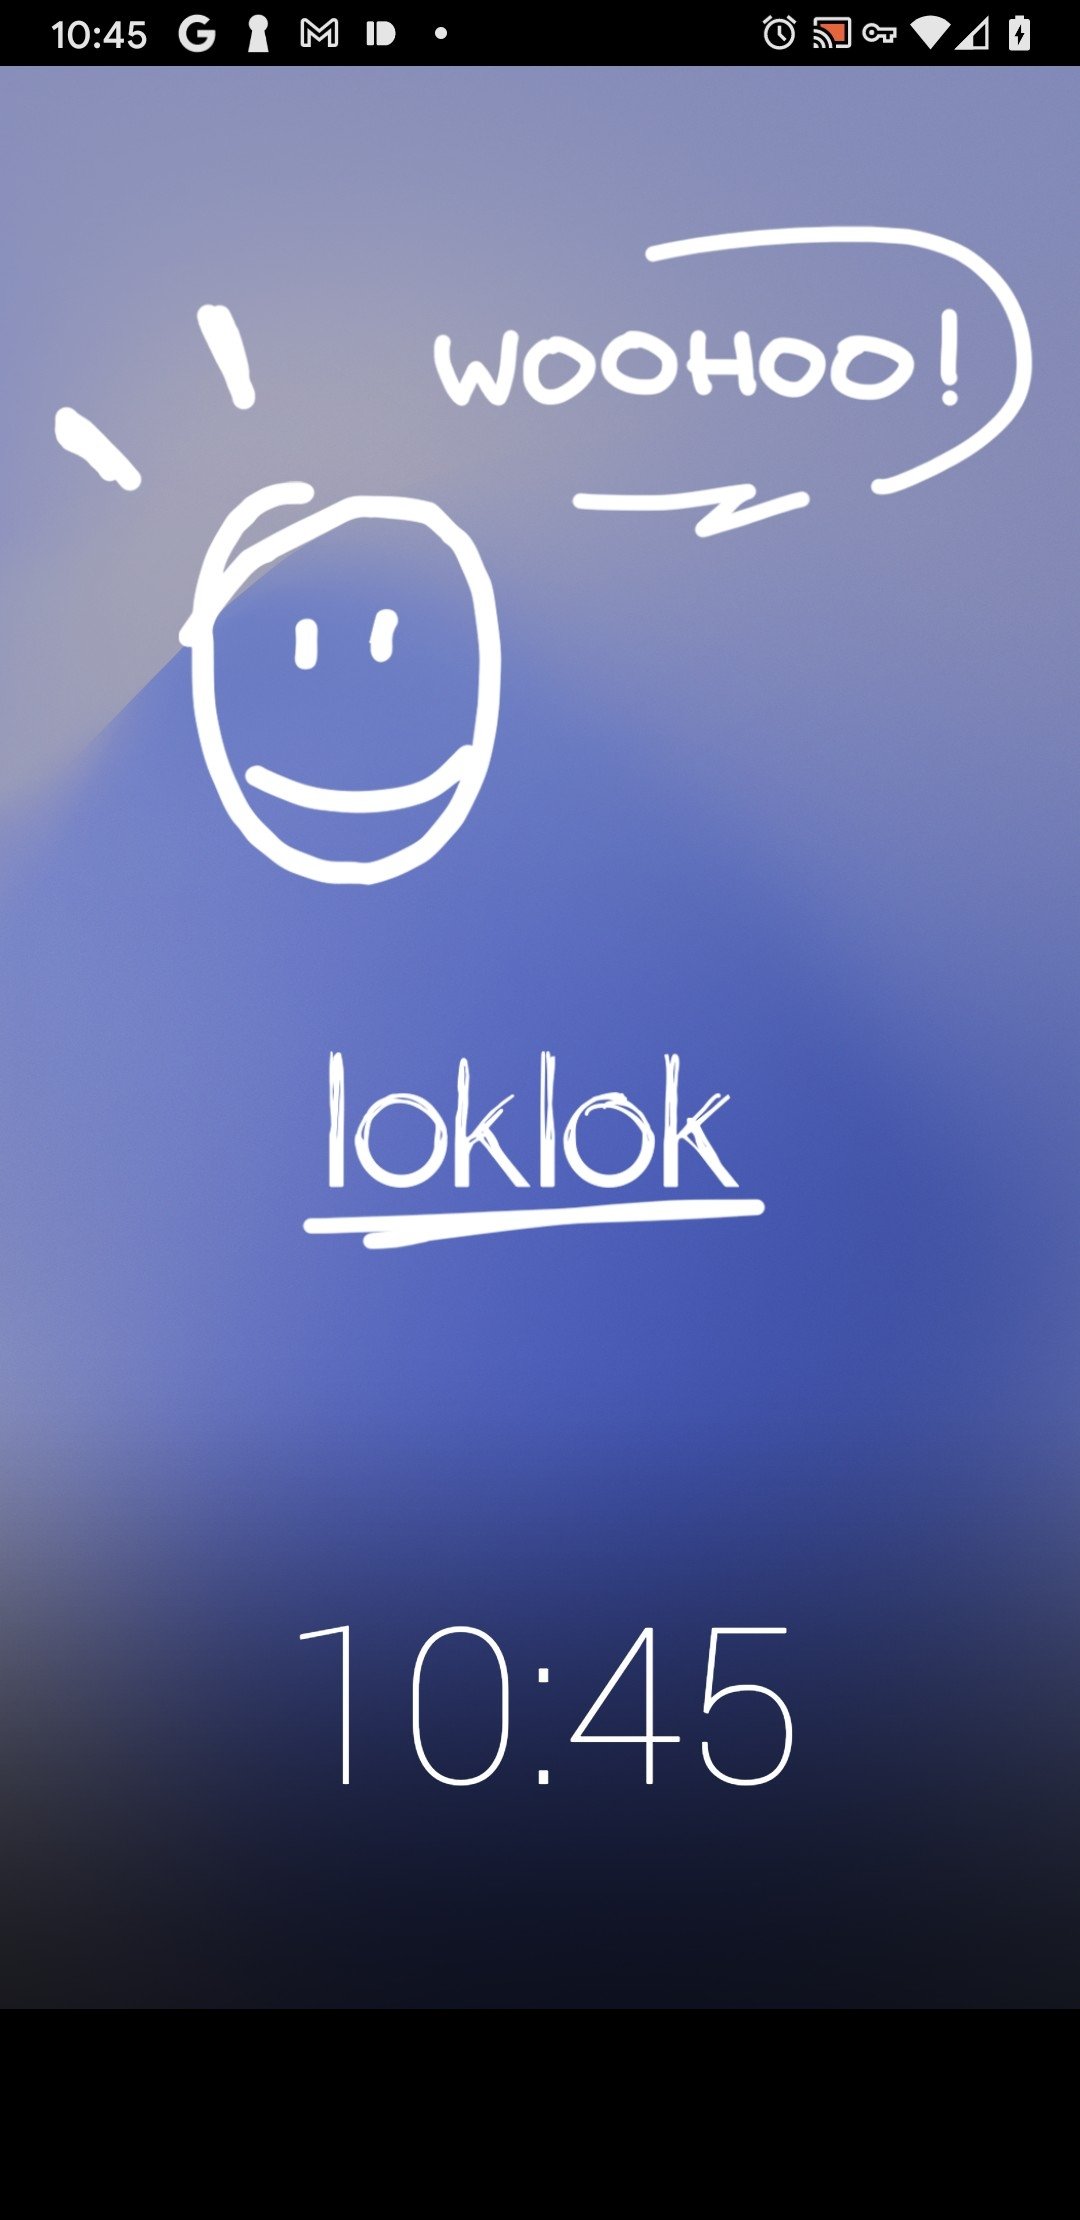 Lok lok app download